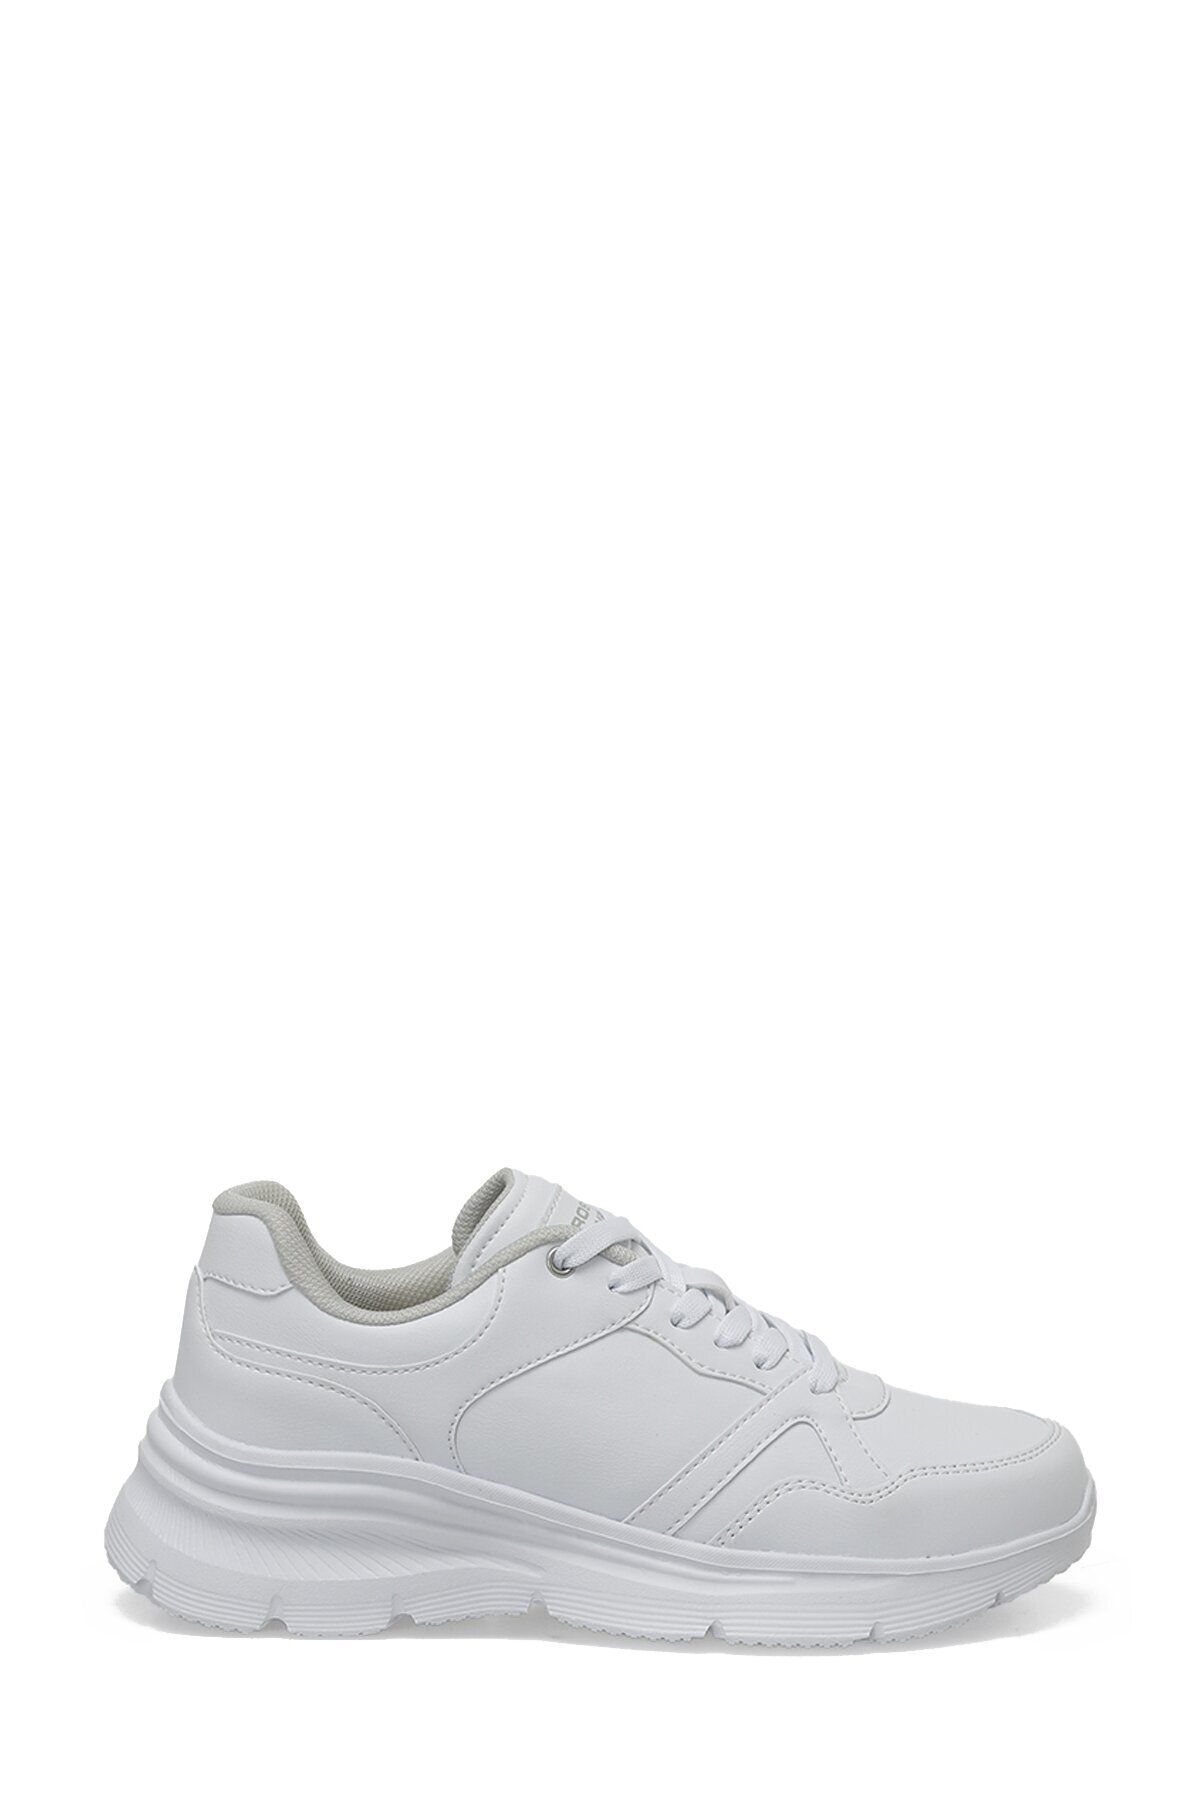 Proshot HELENA PU W 3PR Beyaz Kadın Koşu Ayakkabısı